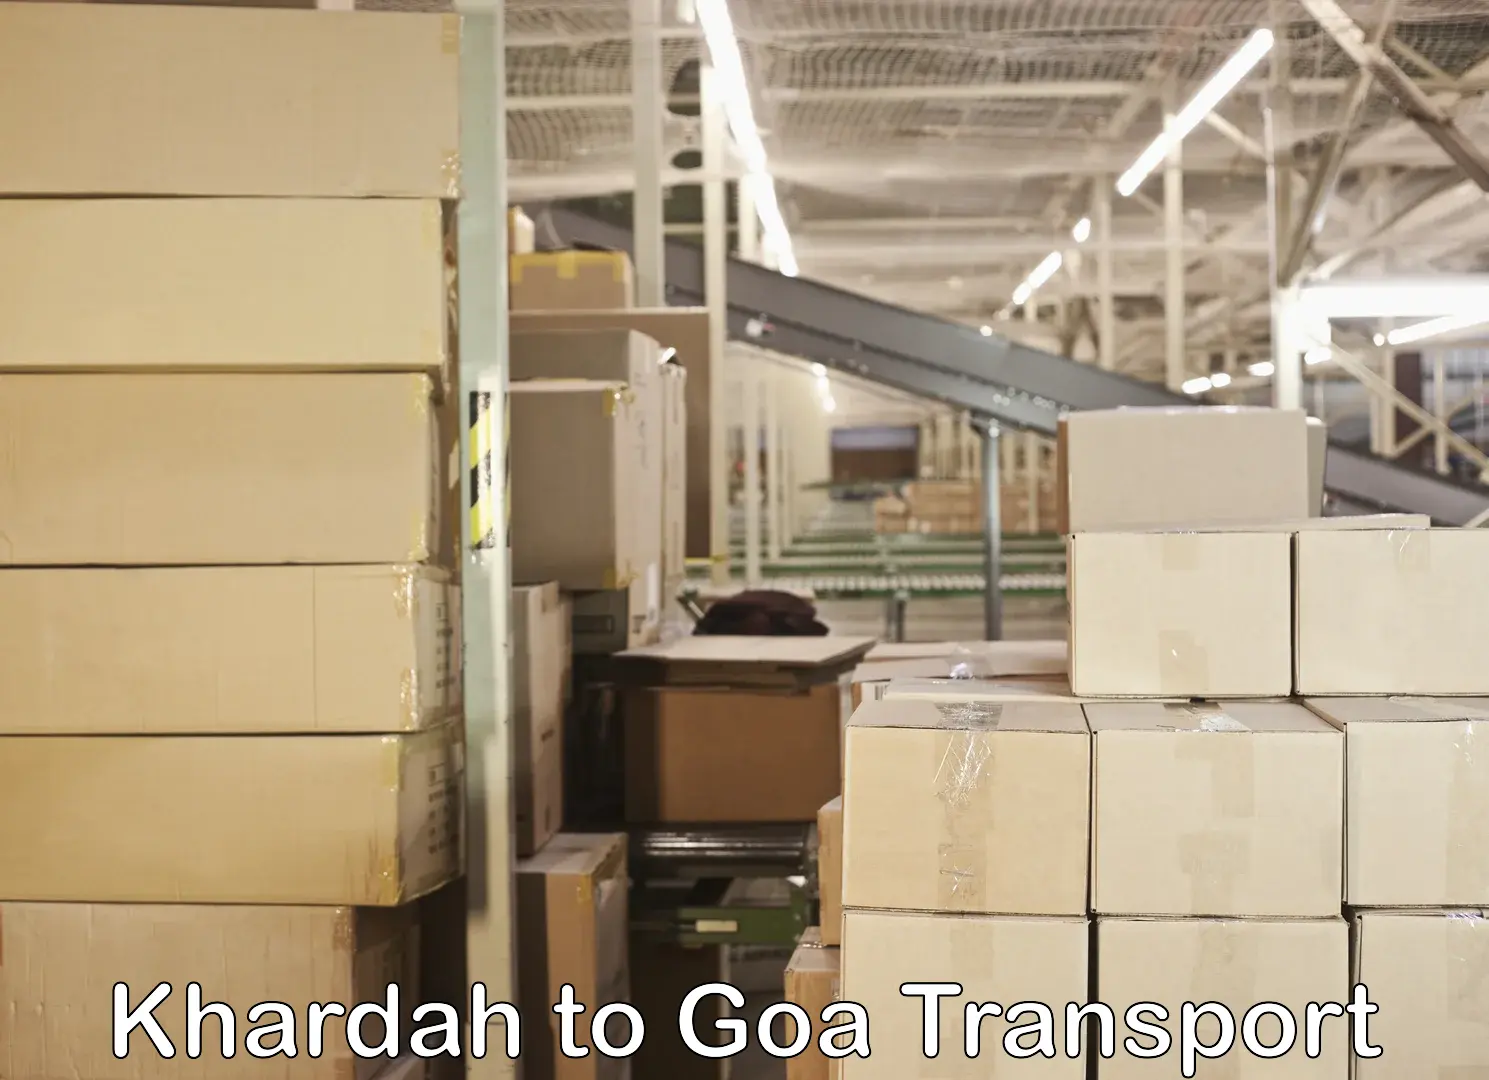 Shipping partner Khardah to Vasco da Gama